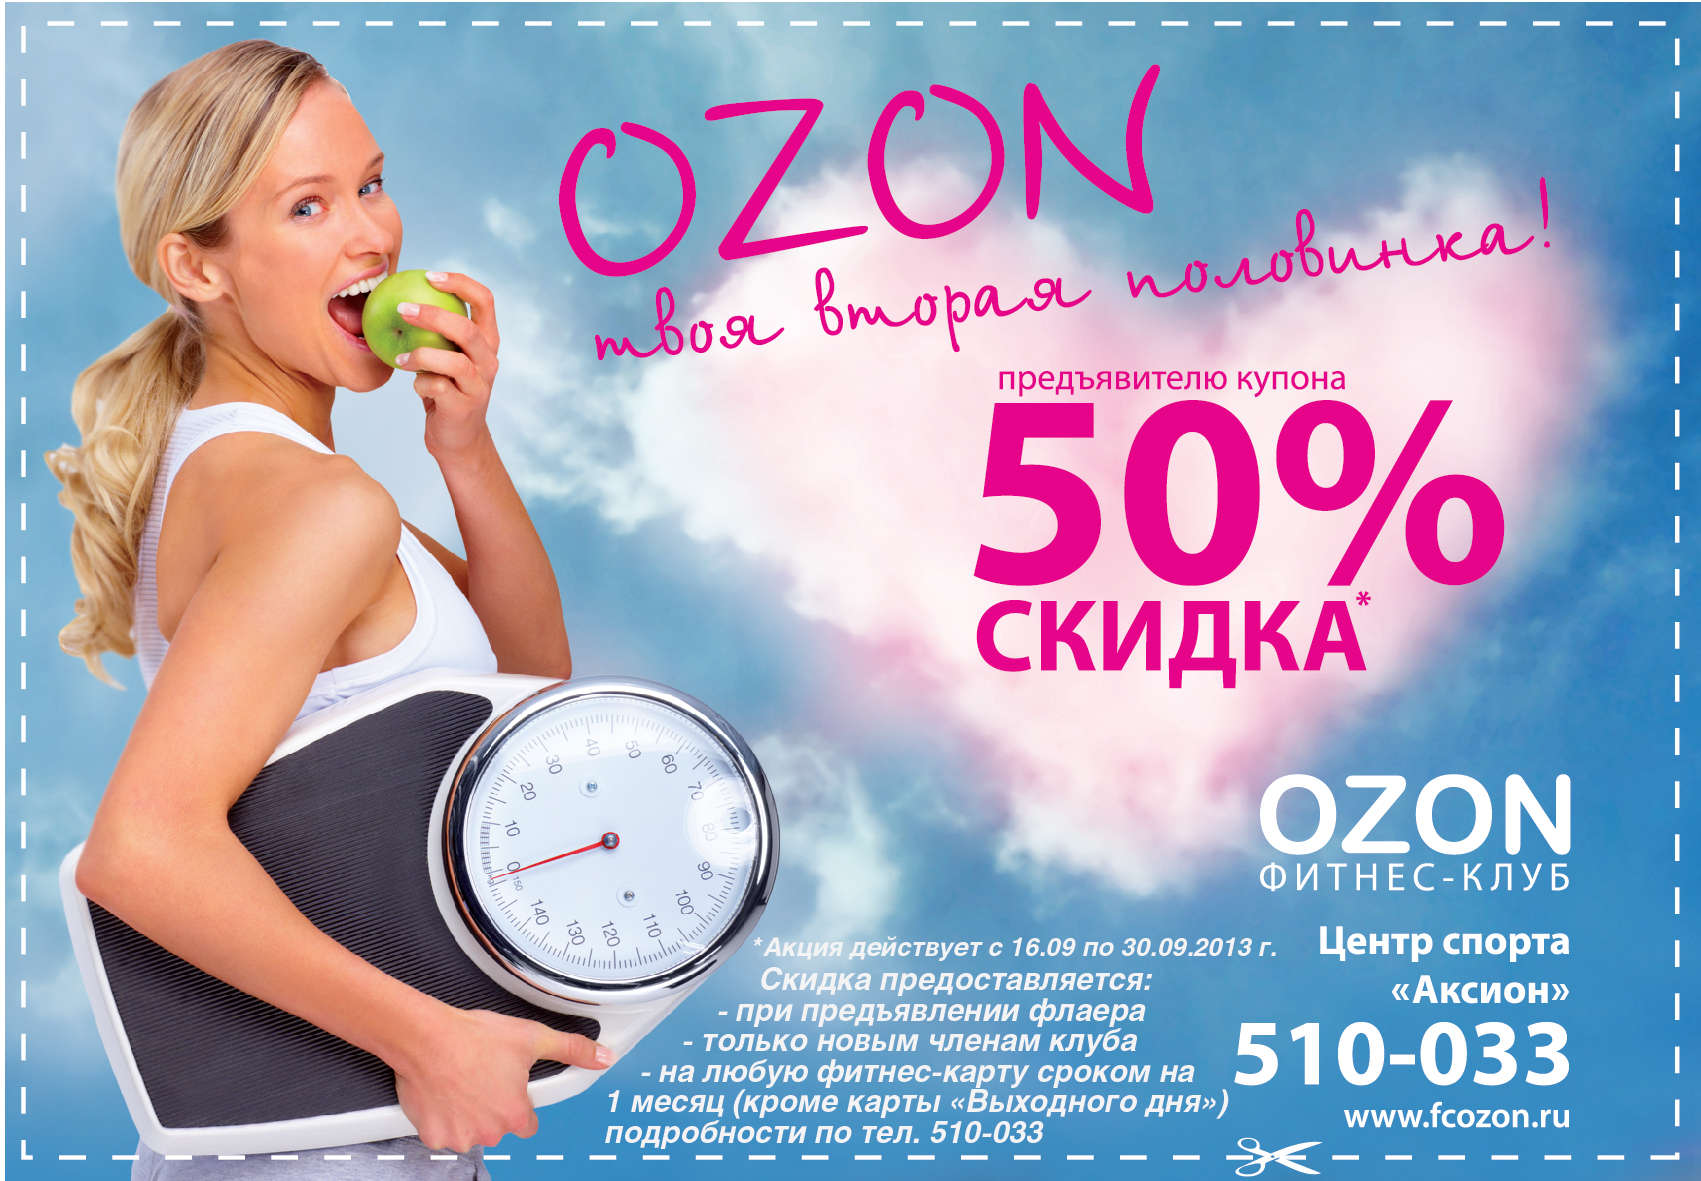 Реклама в поиске озон. OZON реклама. OZON скидки. Скидки. Баннер для акции Озон.